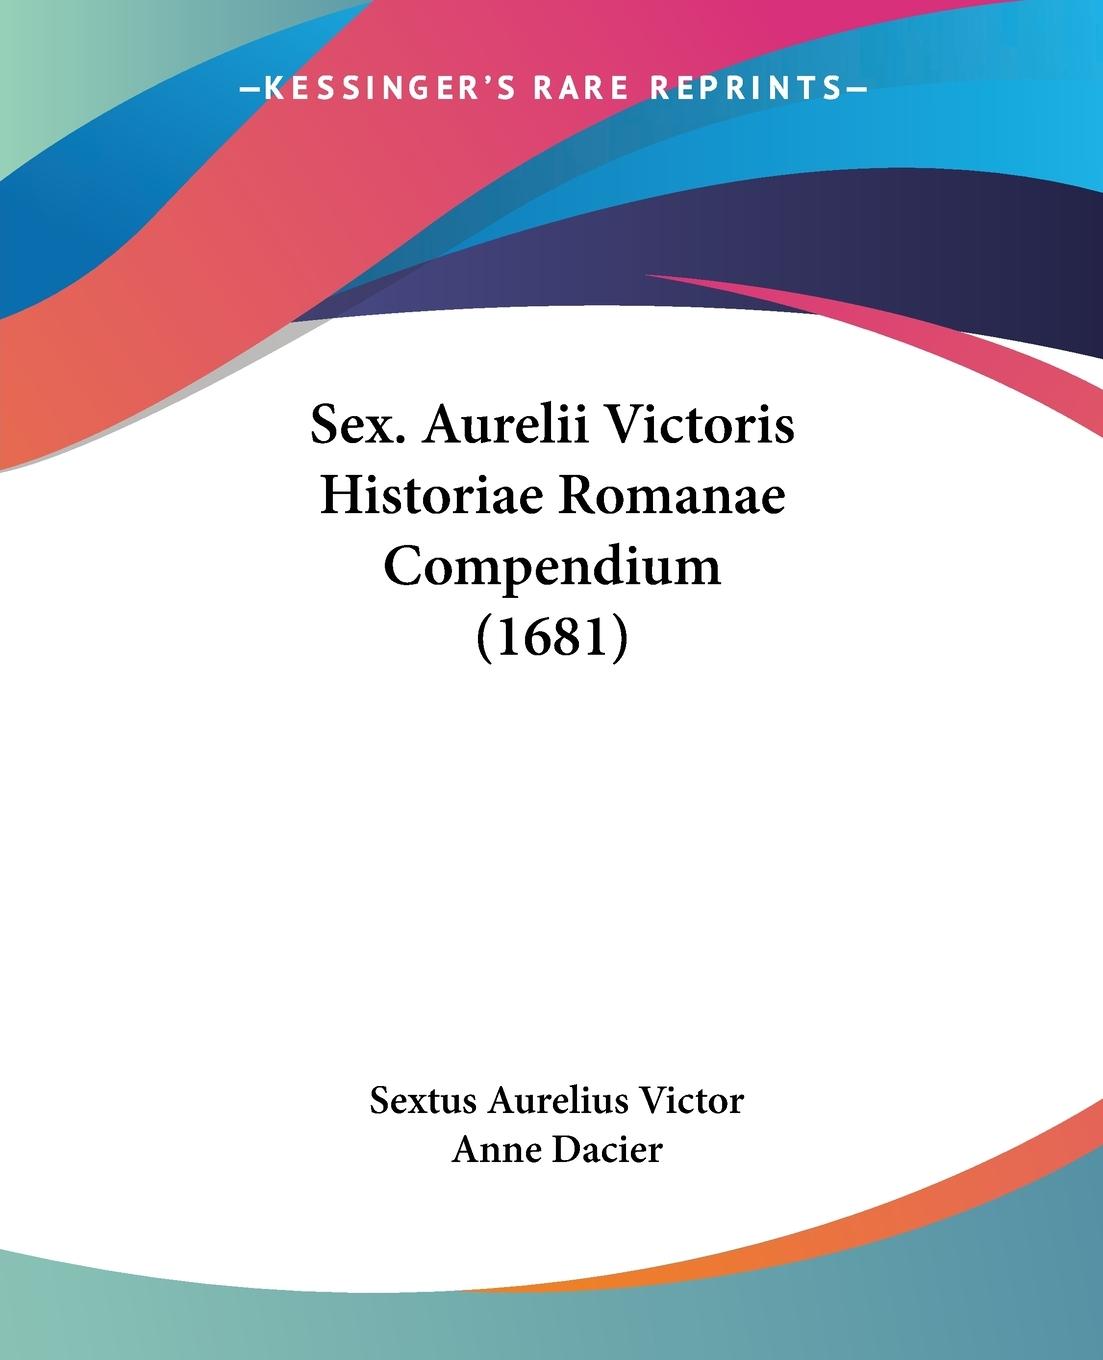 Sex. Aurelii Victoris Historiae Romanae Compendium (1681) - Victor, Sextus Aurelius Dacier, Anne